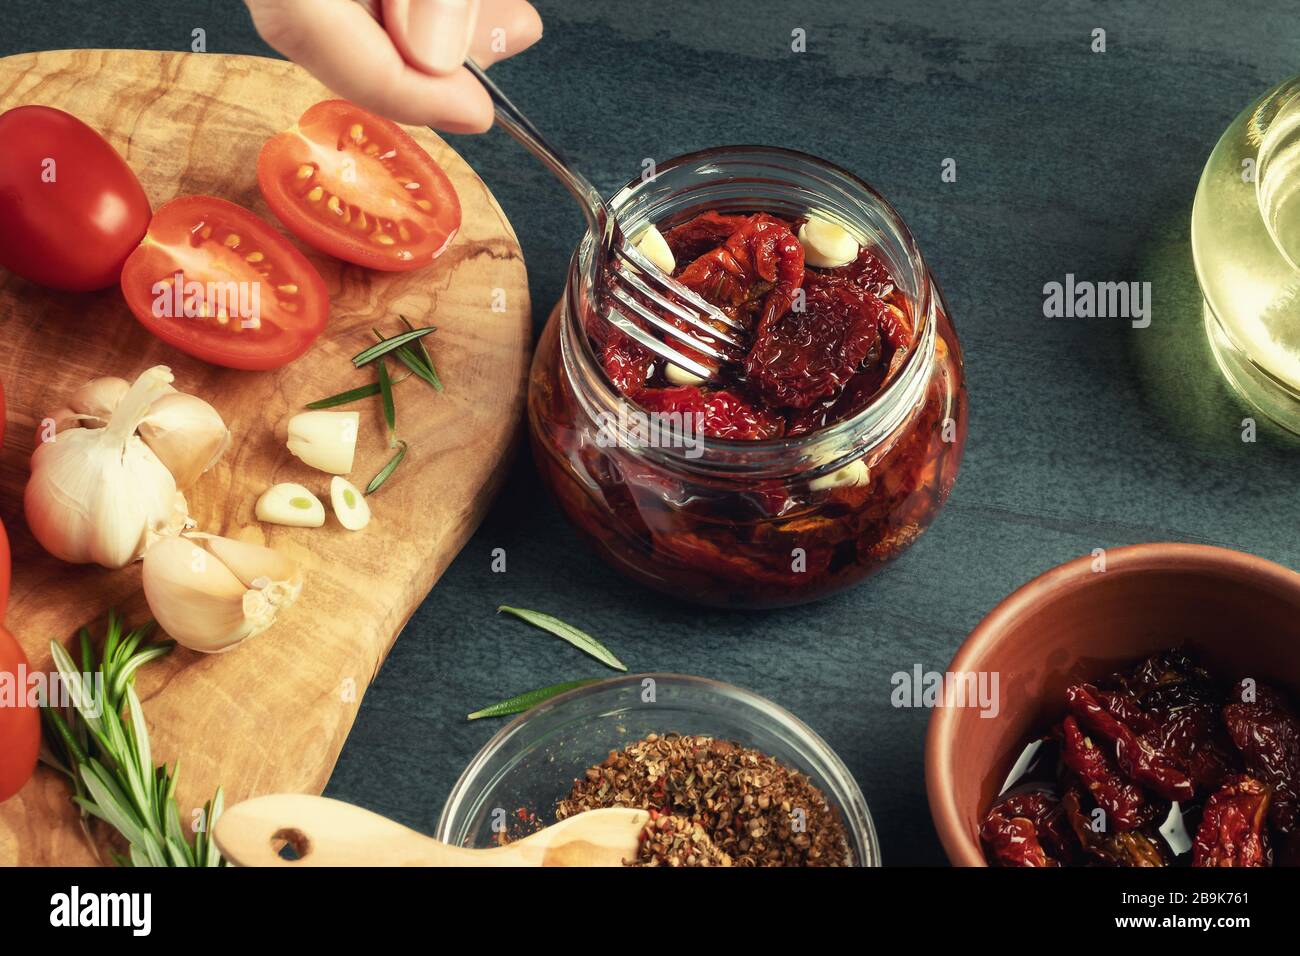 La main femelle place les tomates fourrées dans un pot en verre avec une fourchette. Cuisson de tomates saccadées en conserve avec des épices. Banque D'Images